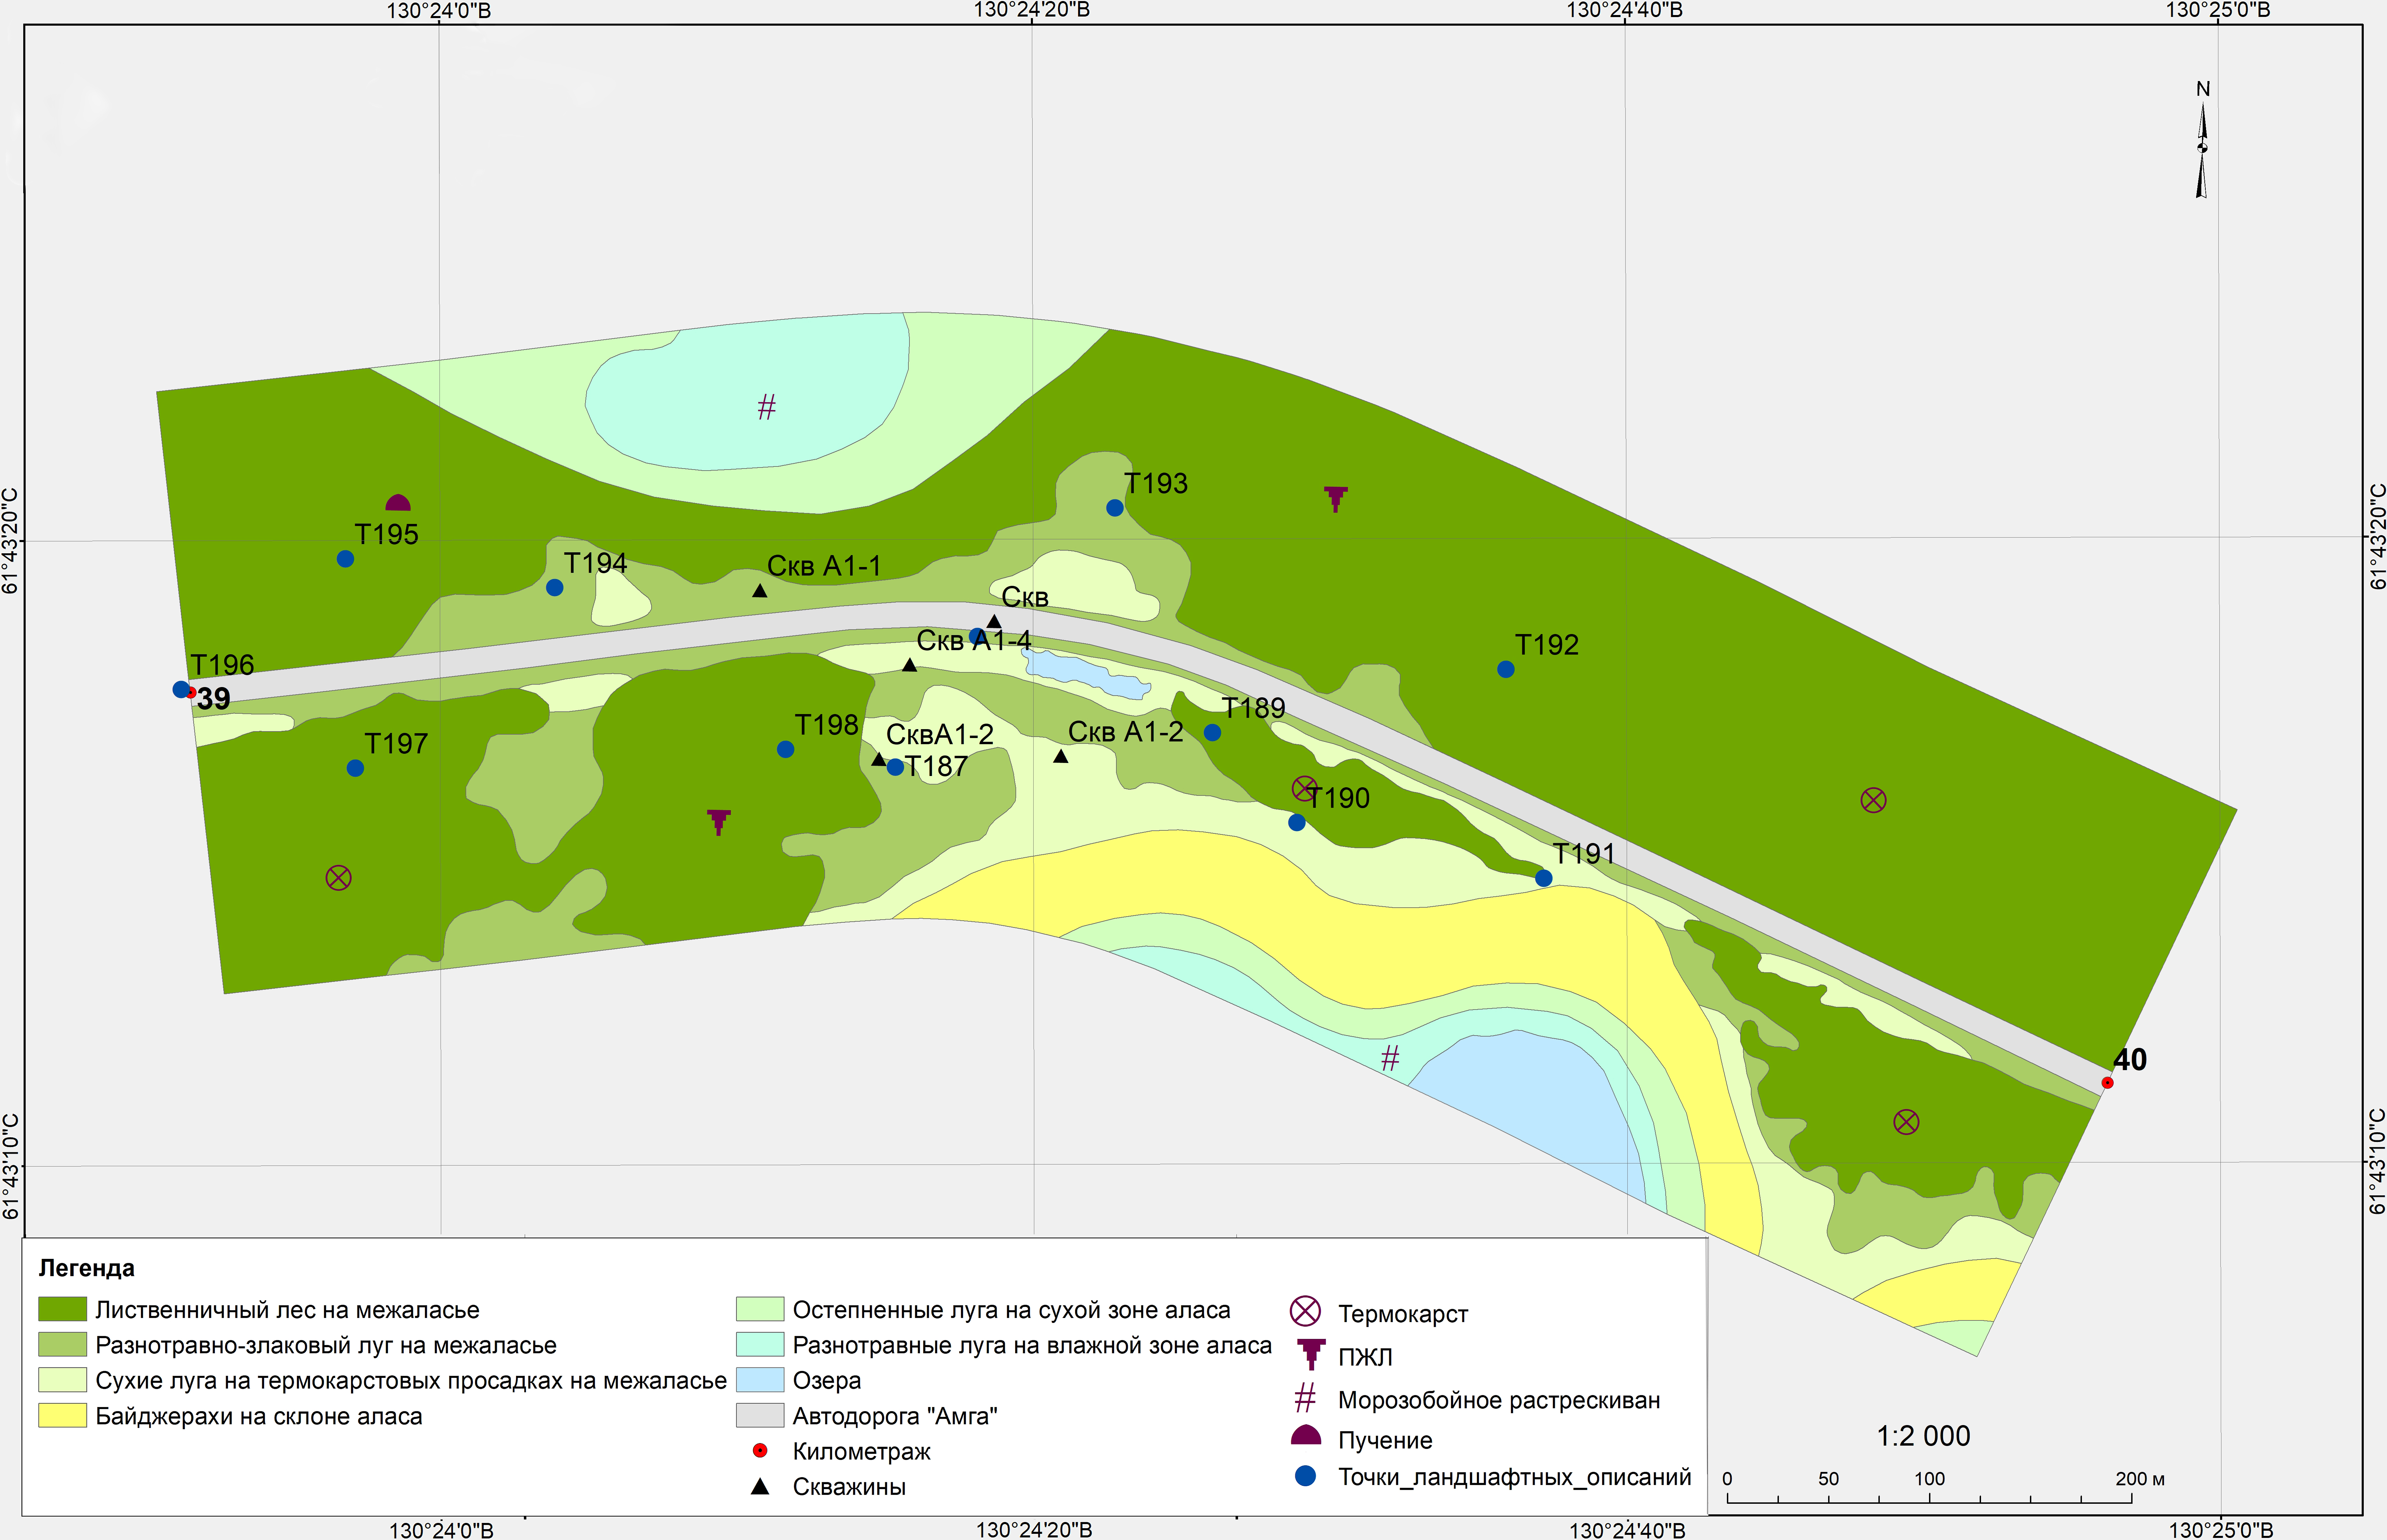 Инженерно-геокриологическая карта участка А-1 автодороги «Амга»